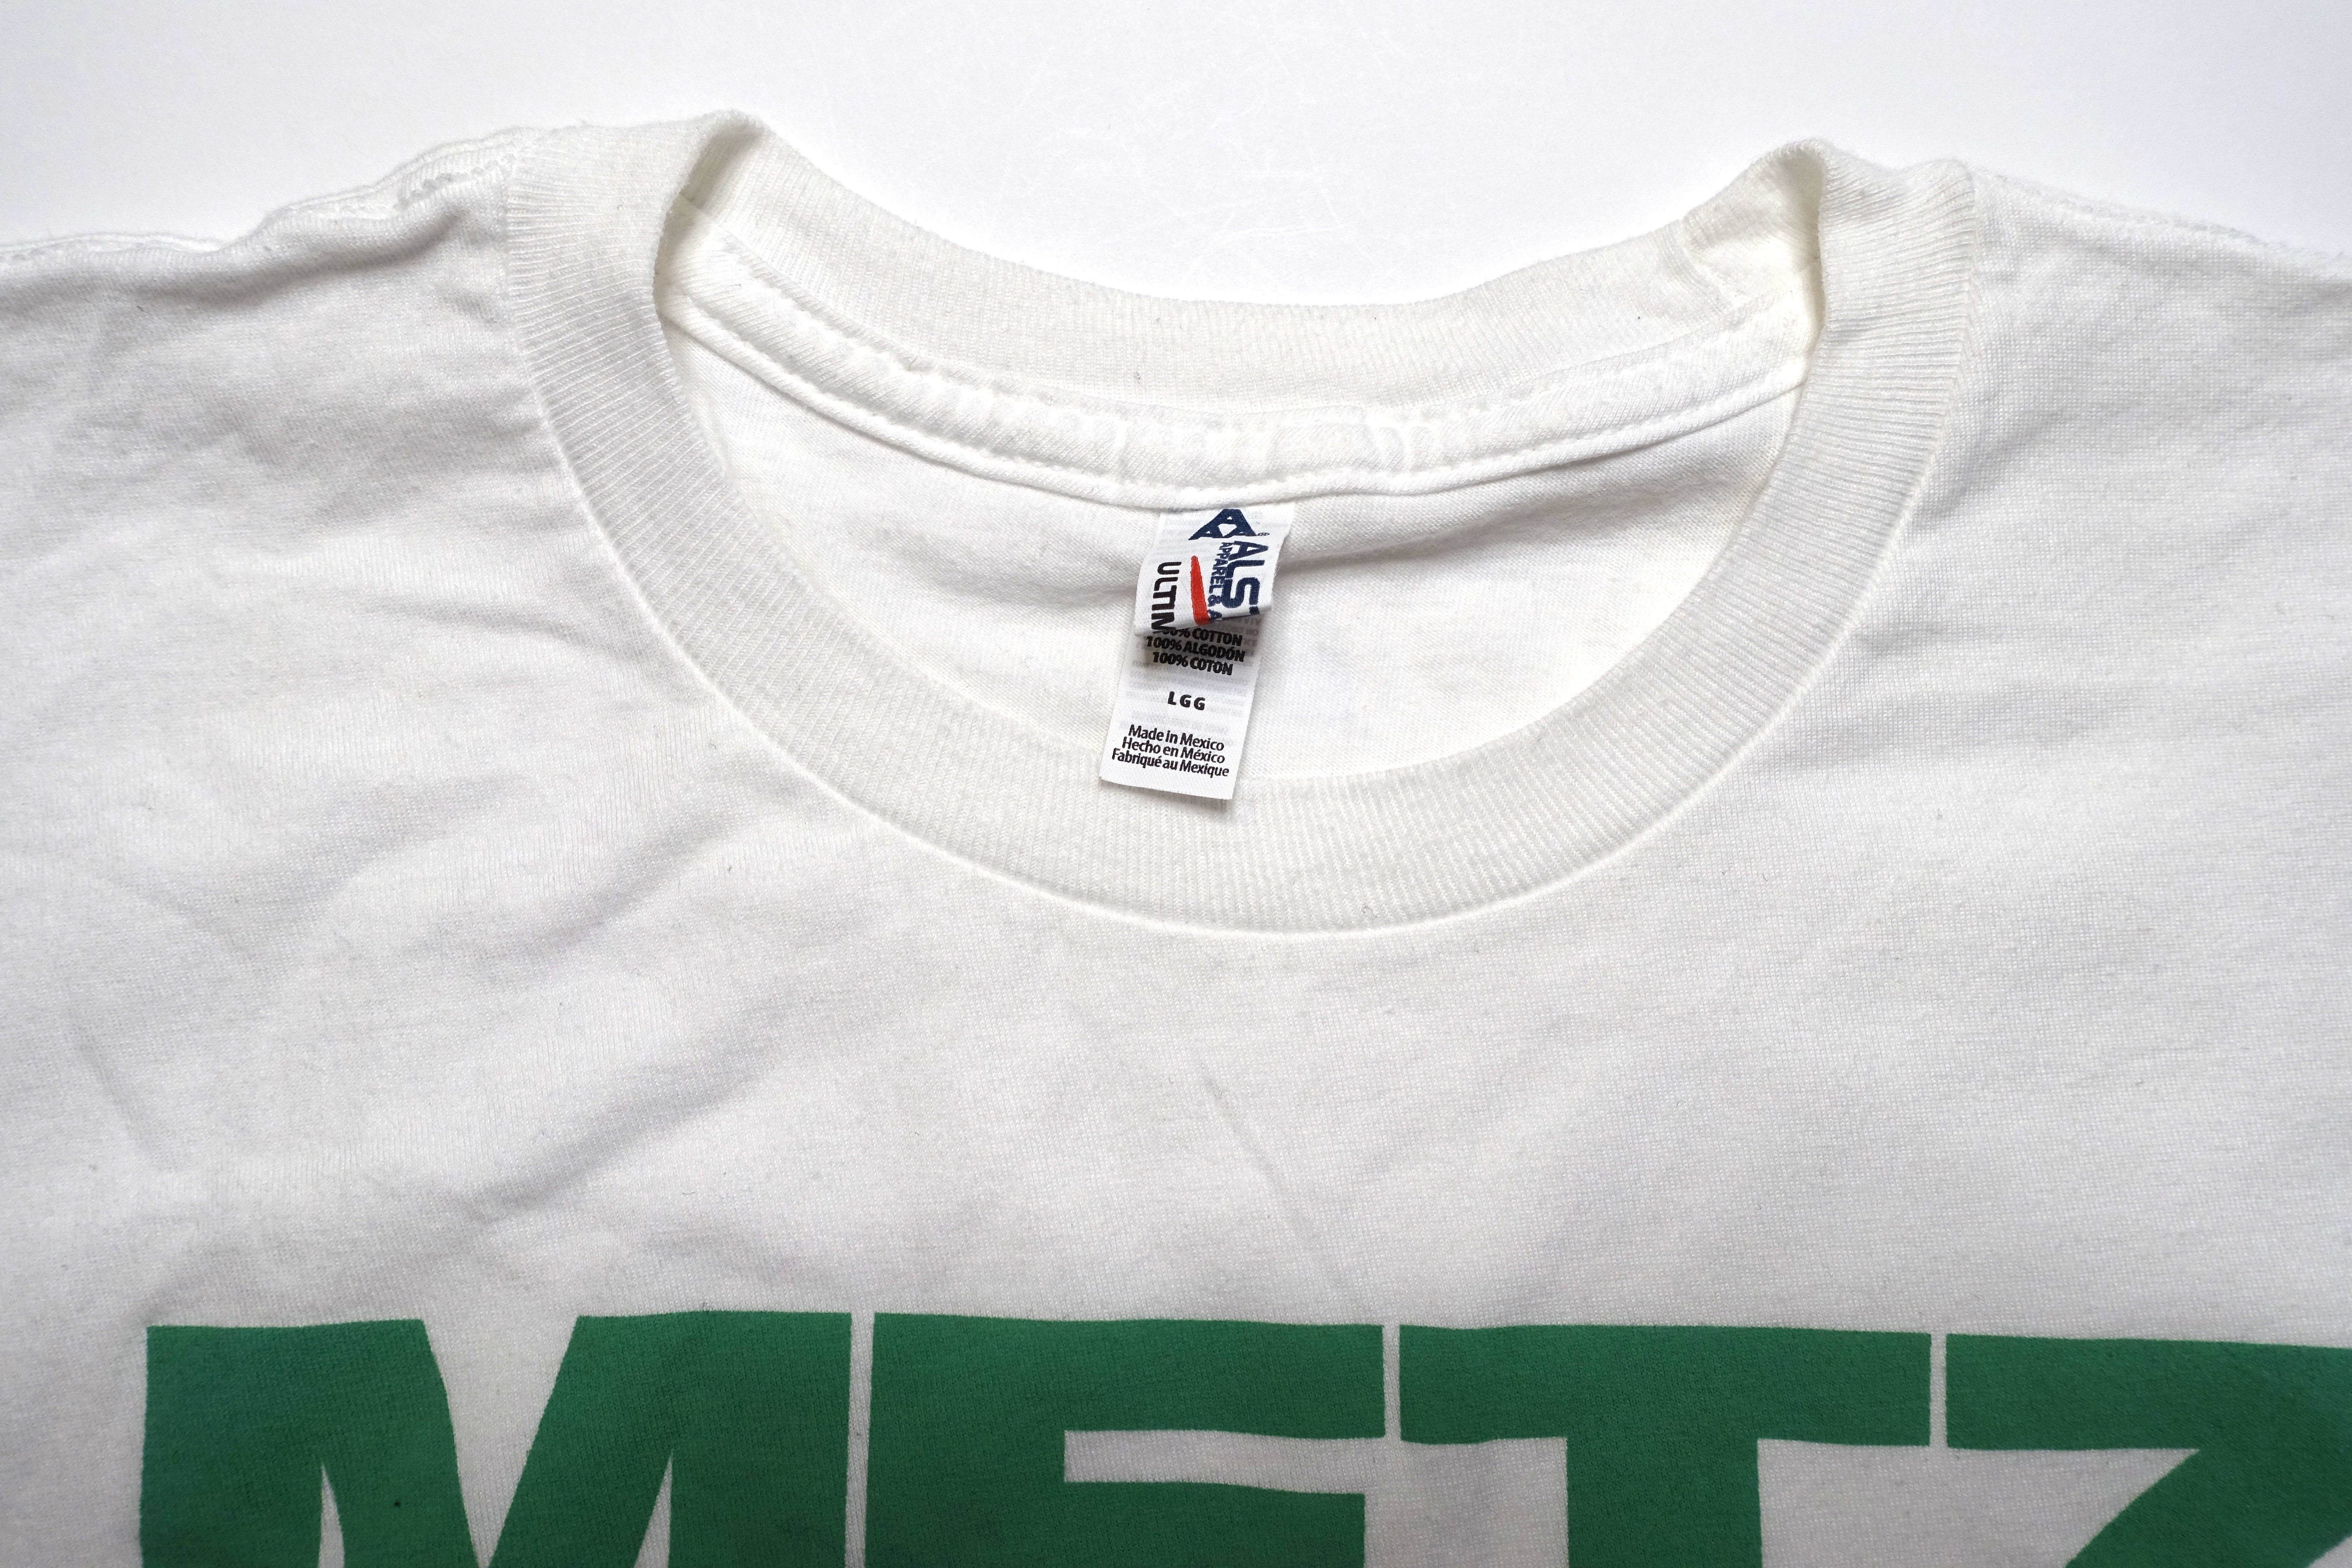 METZ - Green Eraser 2012 Tour Shirt Size Large